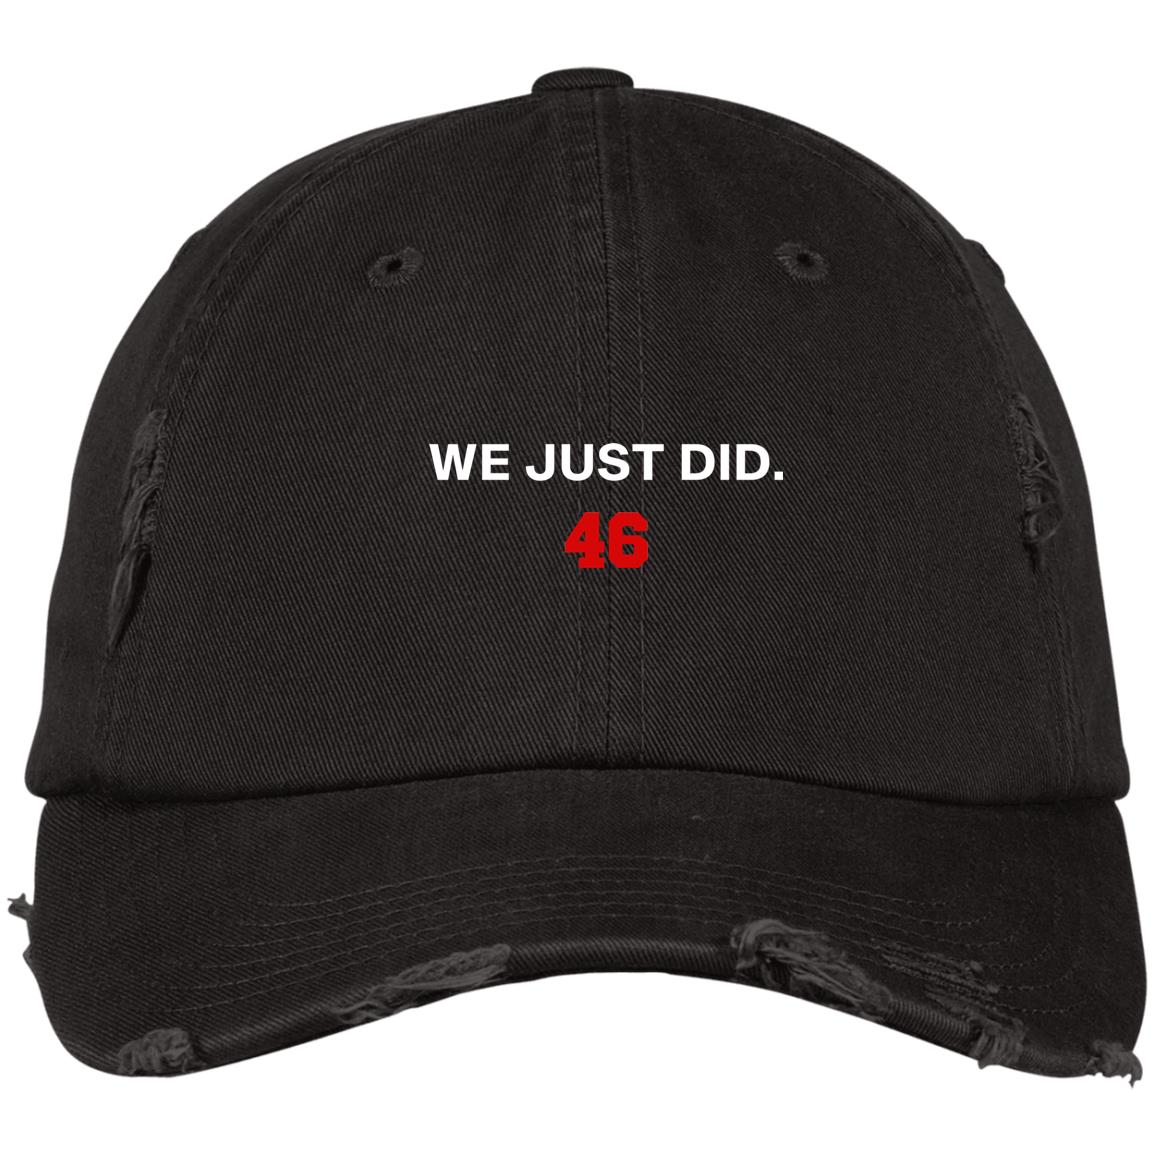 We just did 46 hat - Rockatee